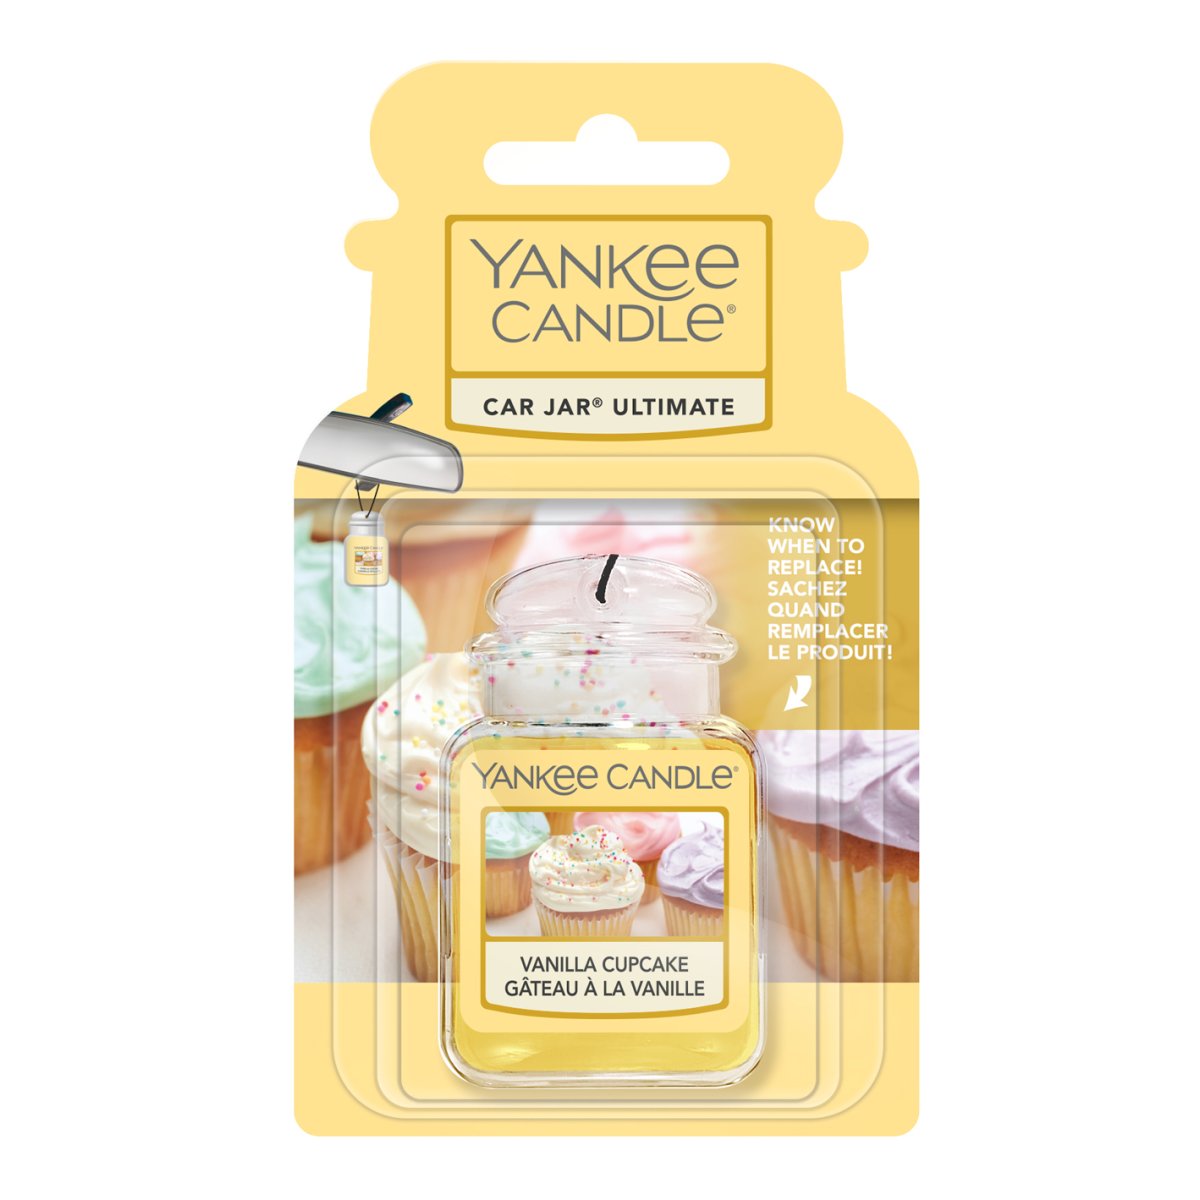 Yankee Candle Autoduft Car Jar, bis zu 4 Wochen Duft, Vanilla